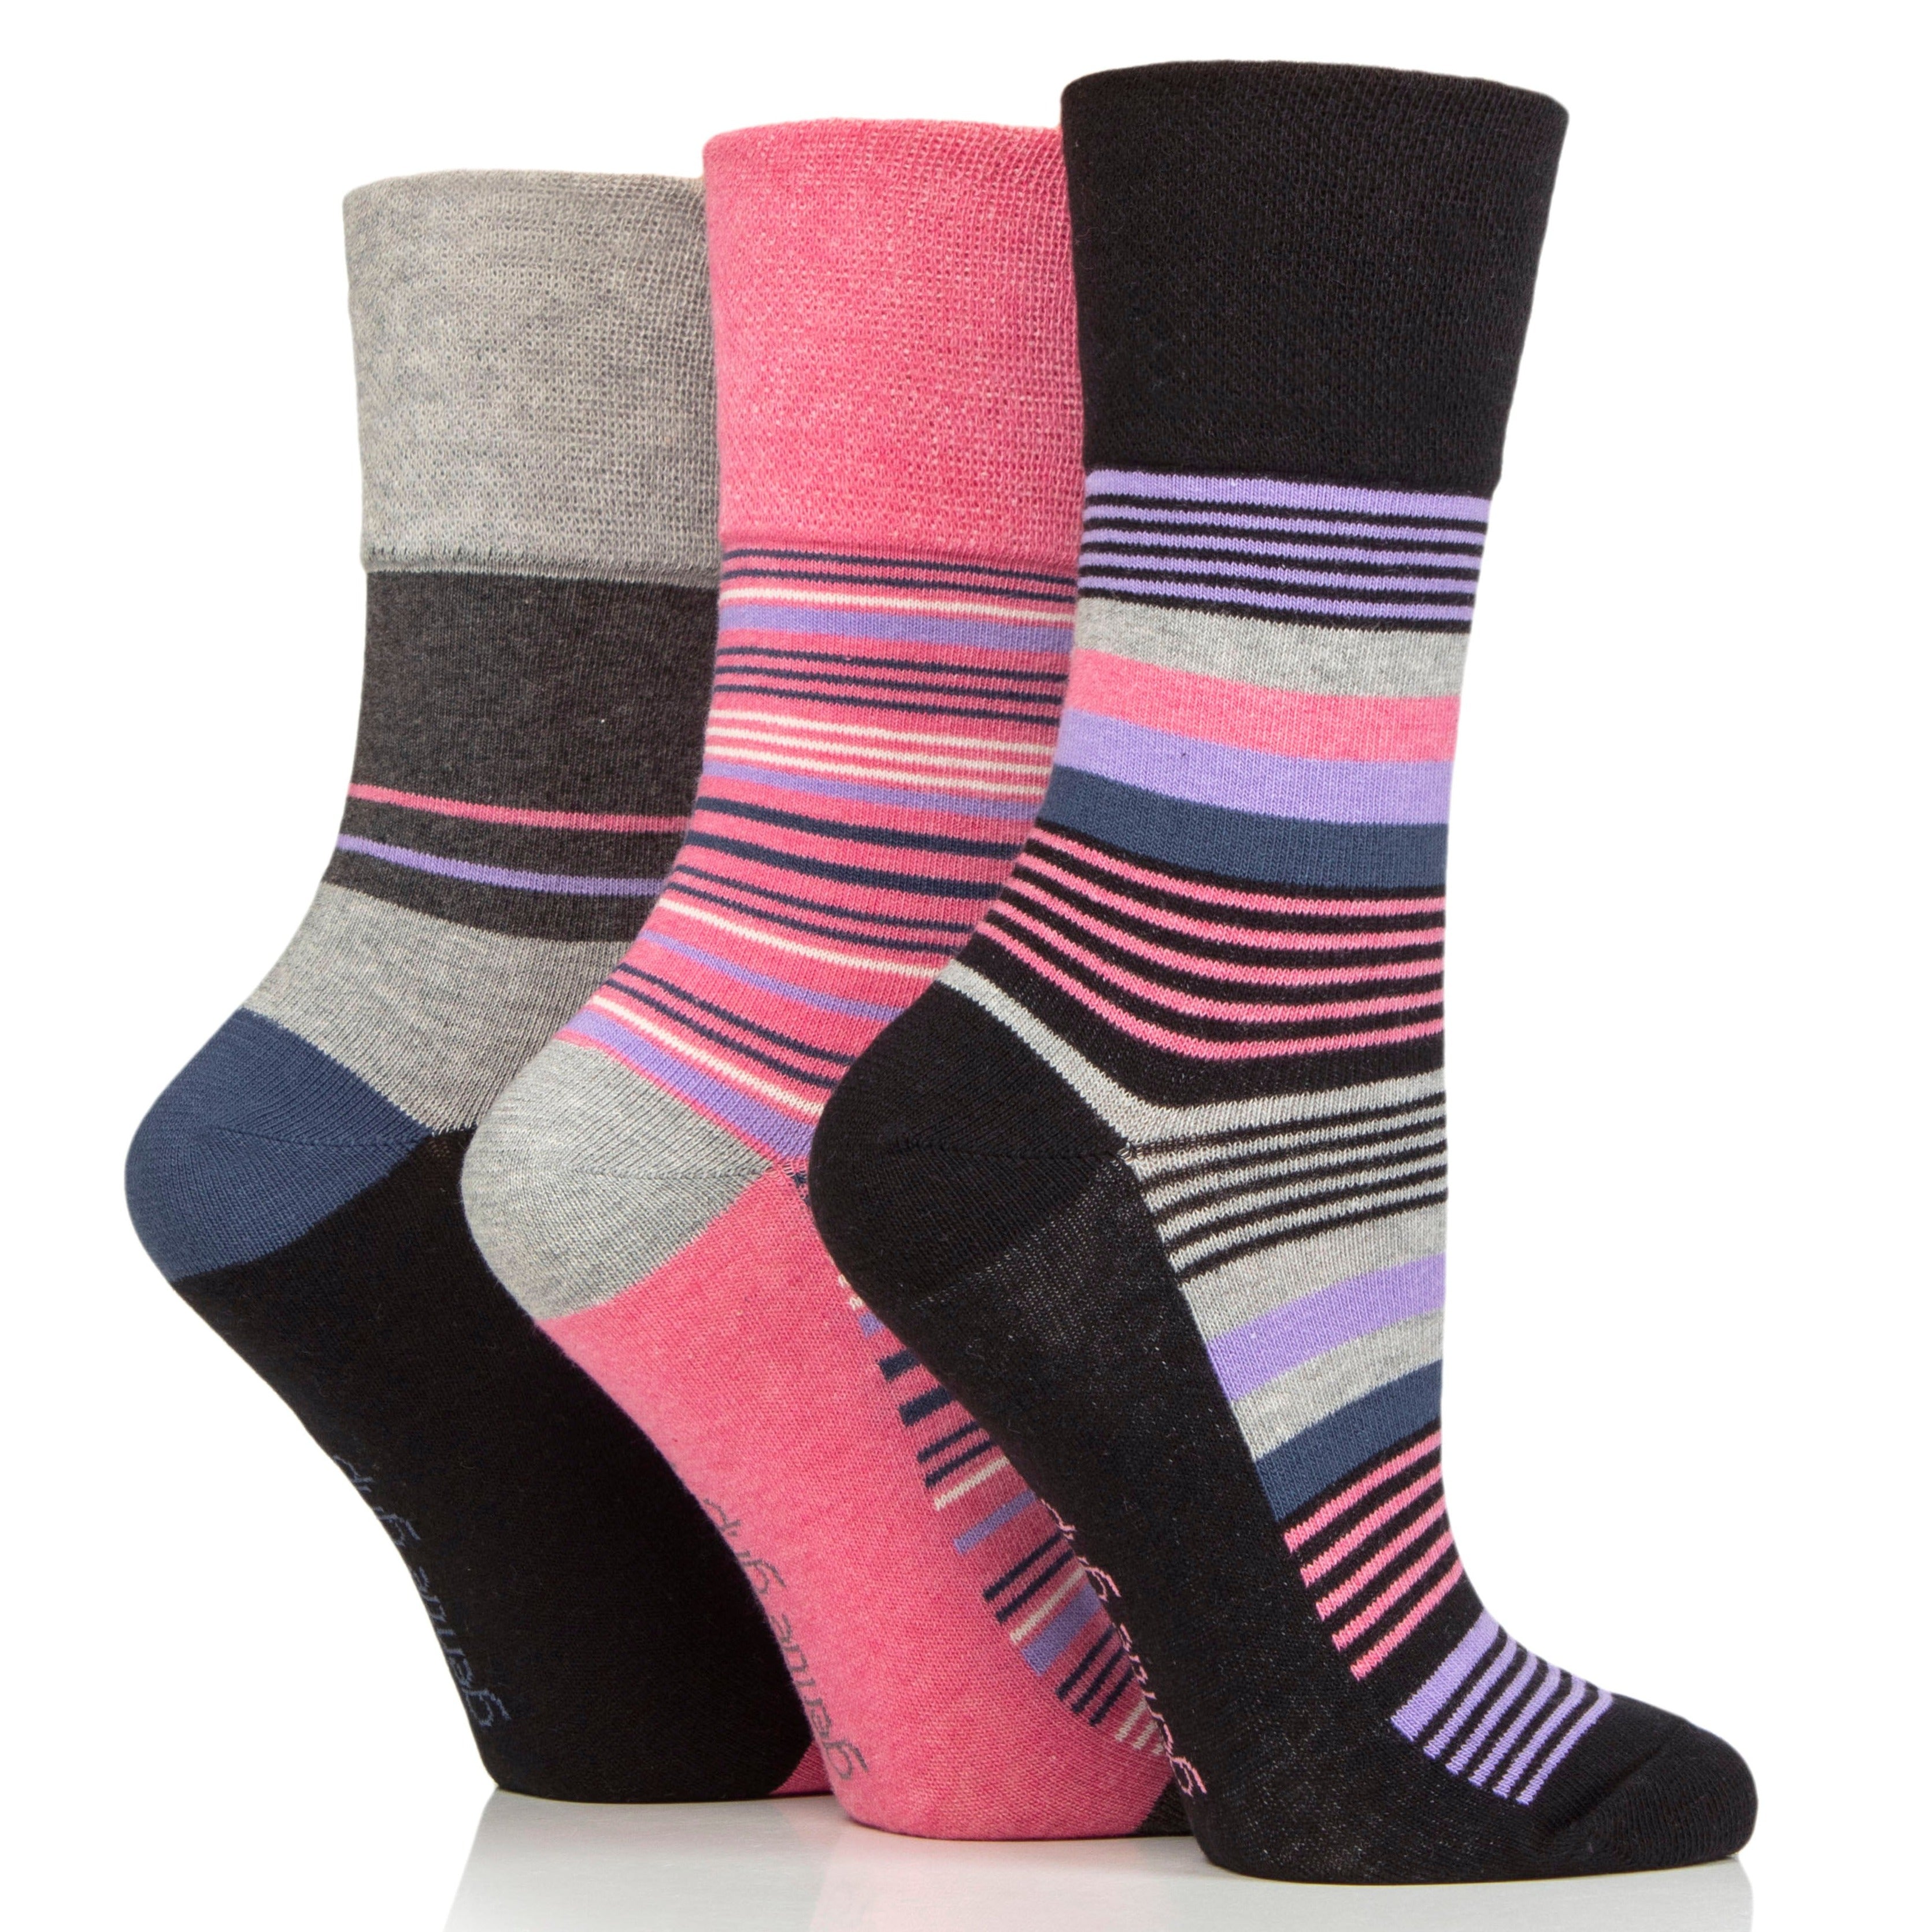 GENTLE GRIP 3Pk Crew Socks - Patterned Stripes - Women's UK 4-8